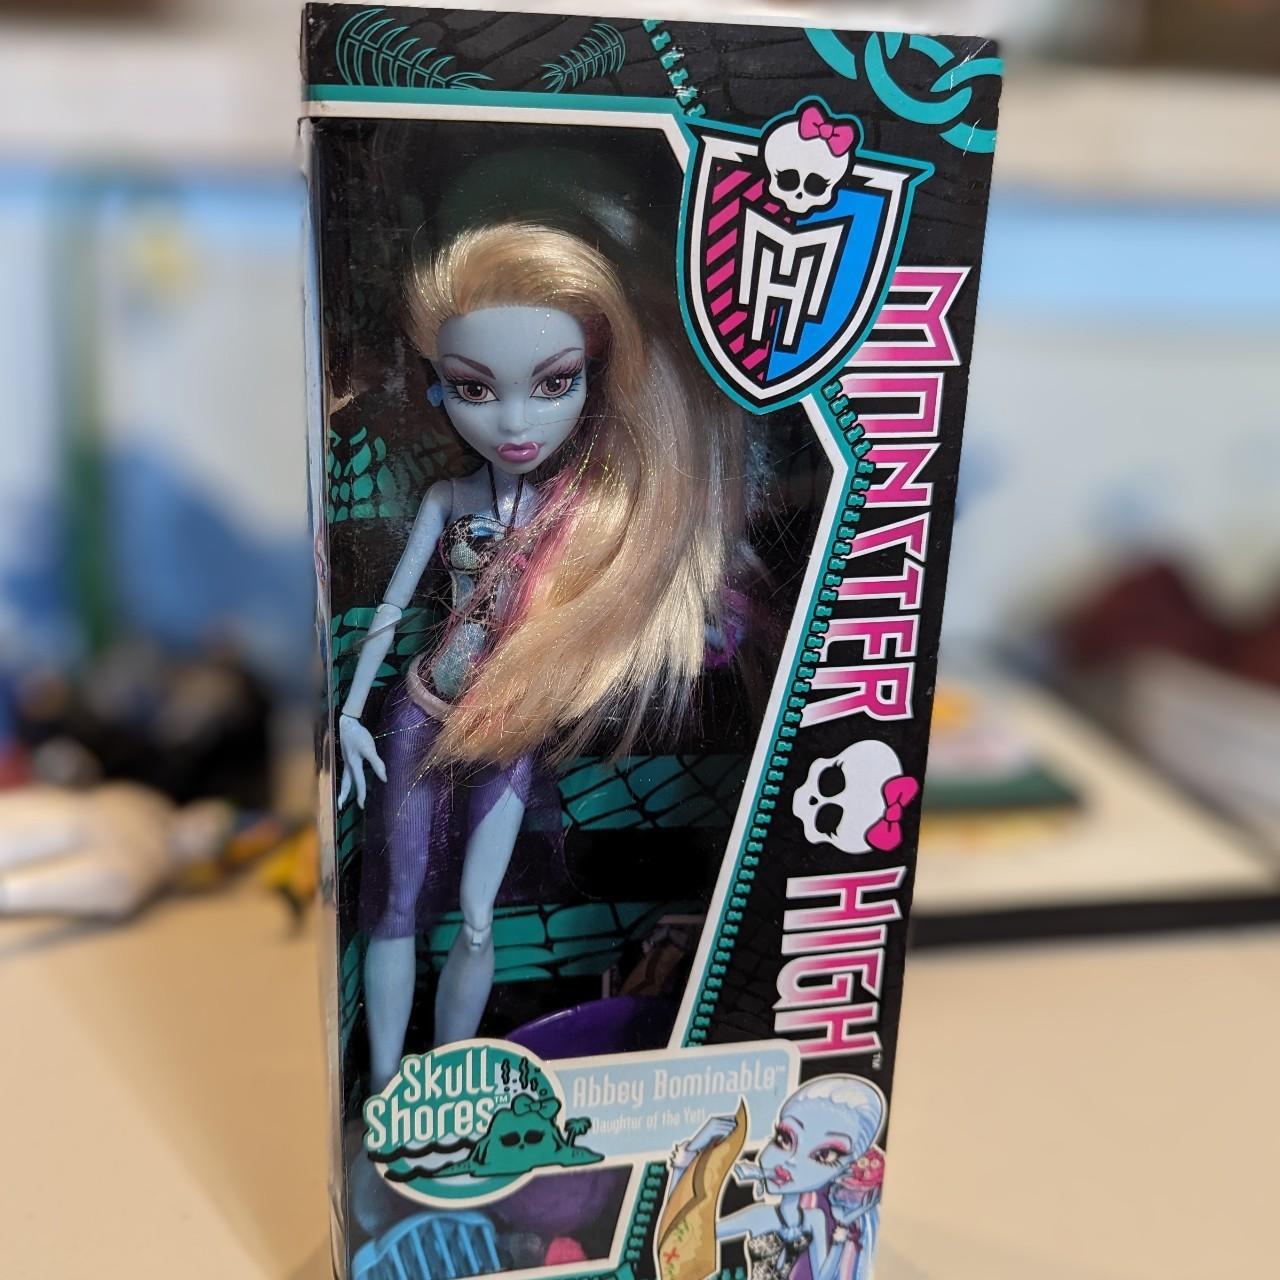 Monster High g1 doll 'Abbey Bominable' 'Skull Shores... - Depop